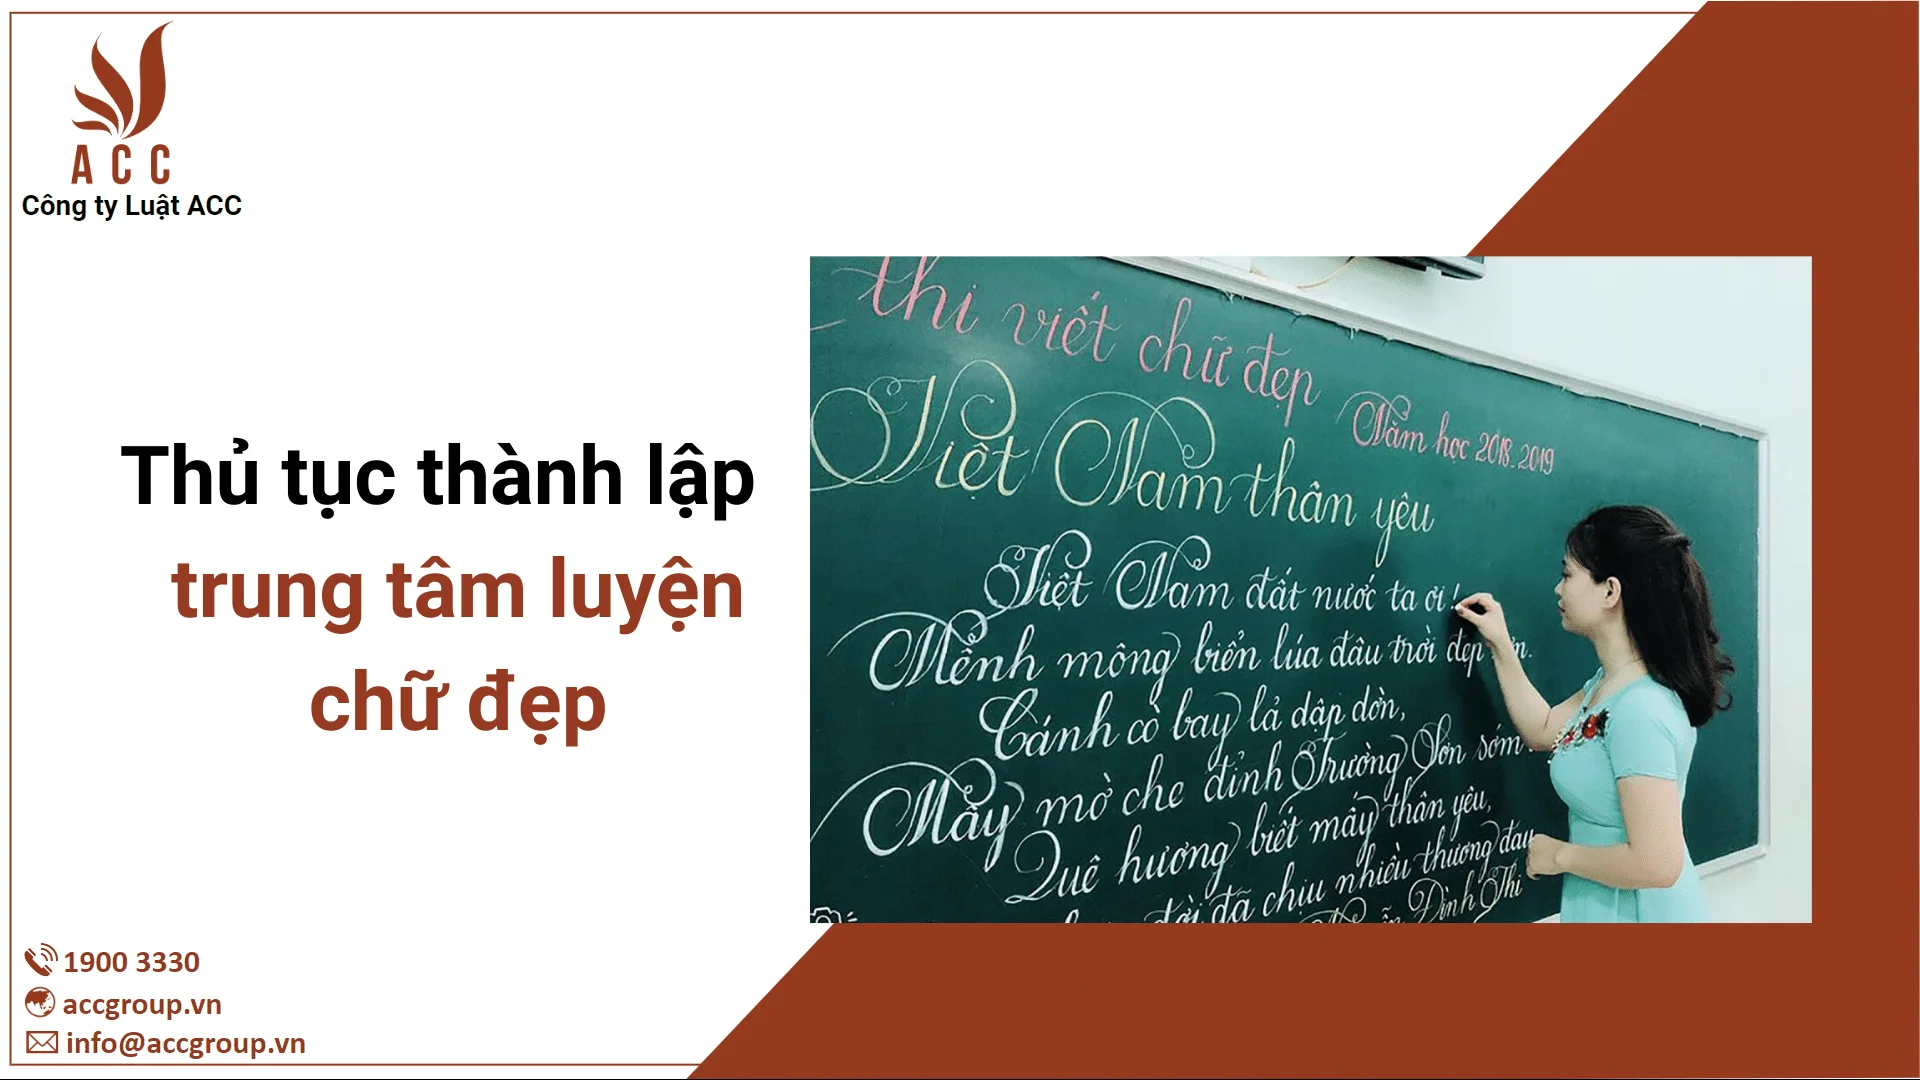 5 điều cần biết về điều kiện mở trung tâm luyện viết chữ đẹp tại Việt Nam